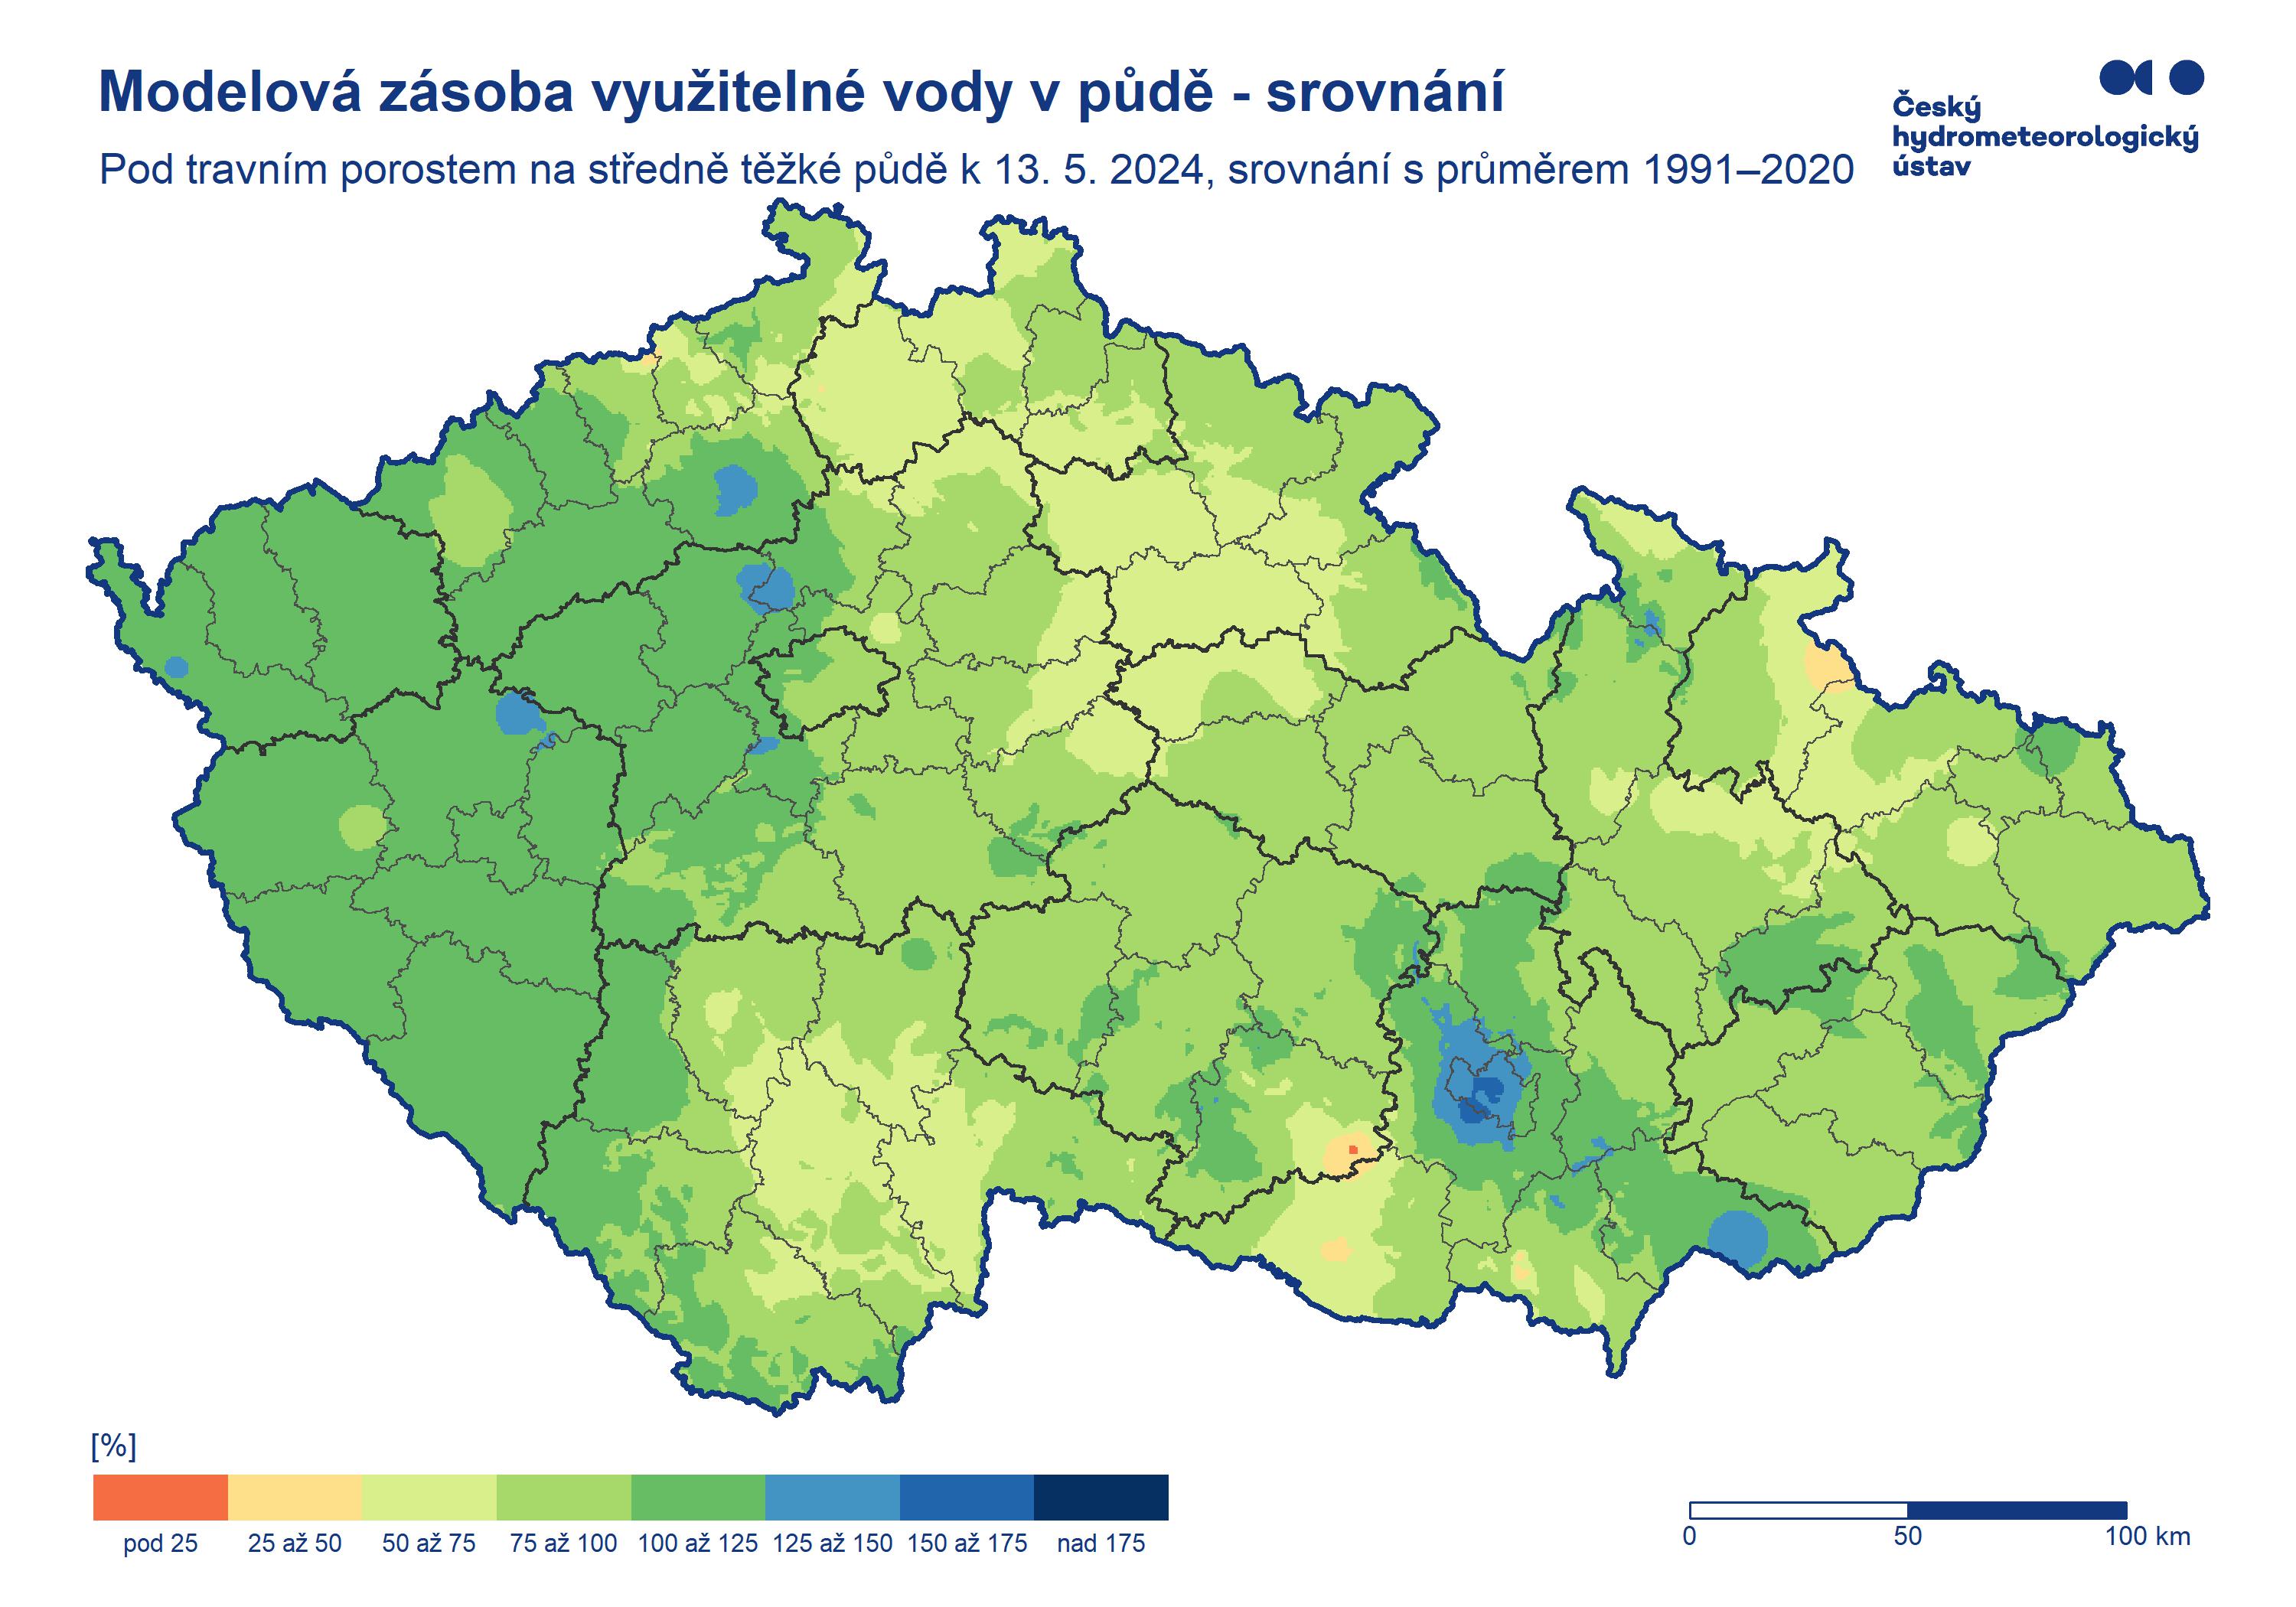 Vodní kapacita středně těžké půdy pod trávníkem - srovnání normálem 1991-2020.